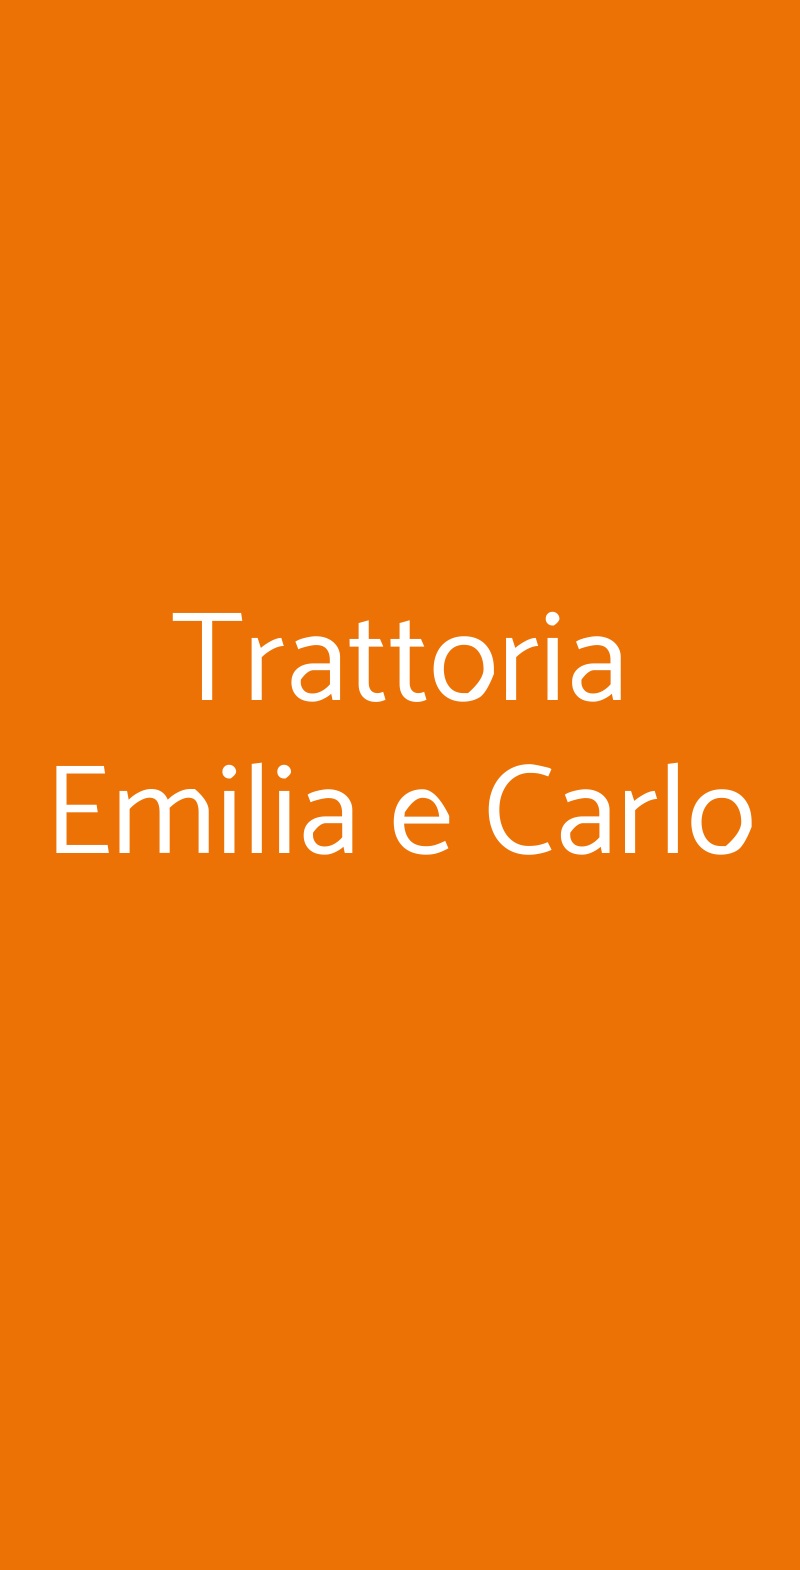 Trattoria Emilia e Carlo Milano menù 1 pagina